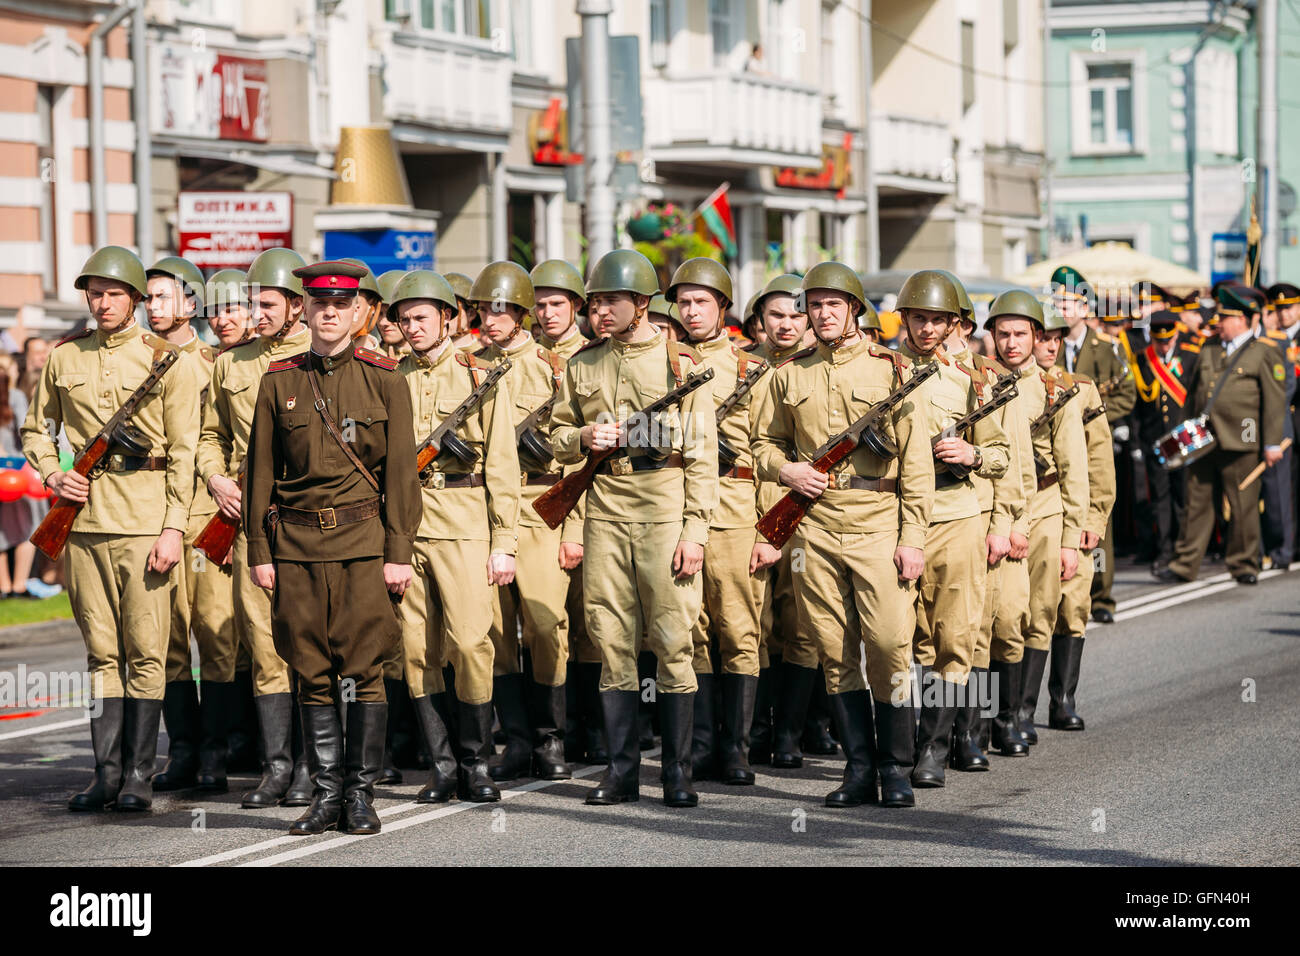 Die bewaffneten Soldaten Bildung mit dem Offizier vor der Straße. Die Teilnehmer der Parade, verkleidet als russischen sowjetischen Sol Stockfoto